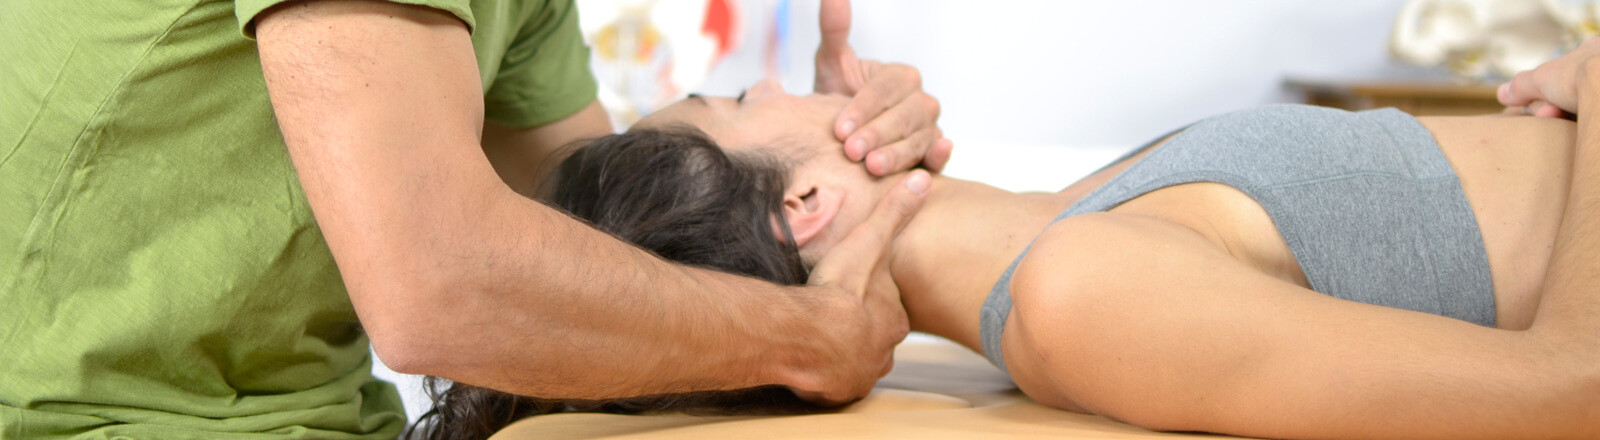 masaje terapeutico fisioterapia